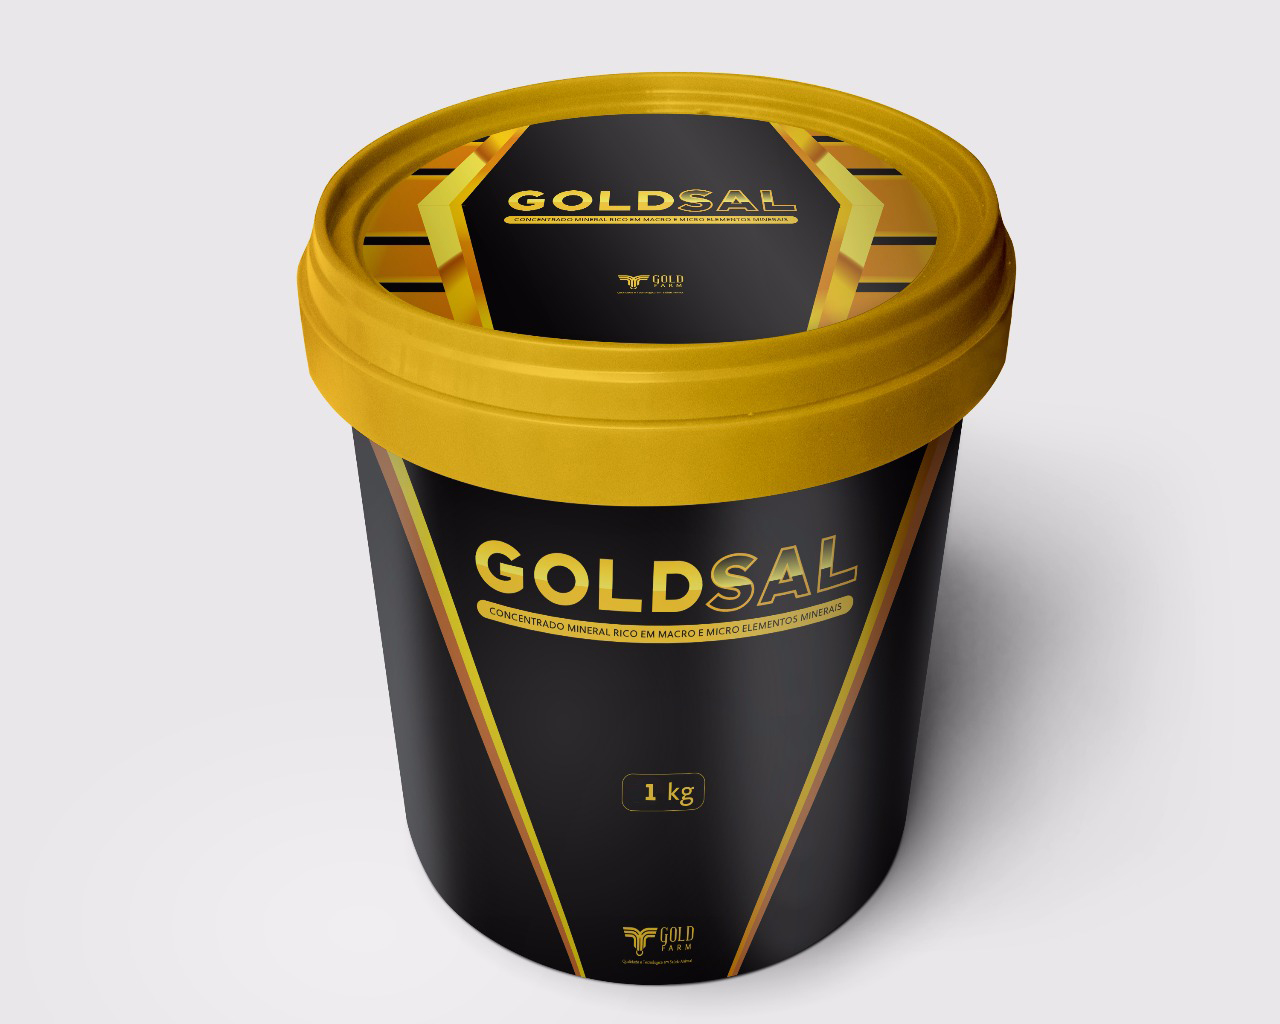 IMUNOGOLD 20 kg - Gold Farm